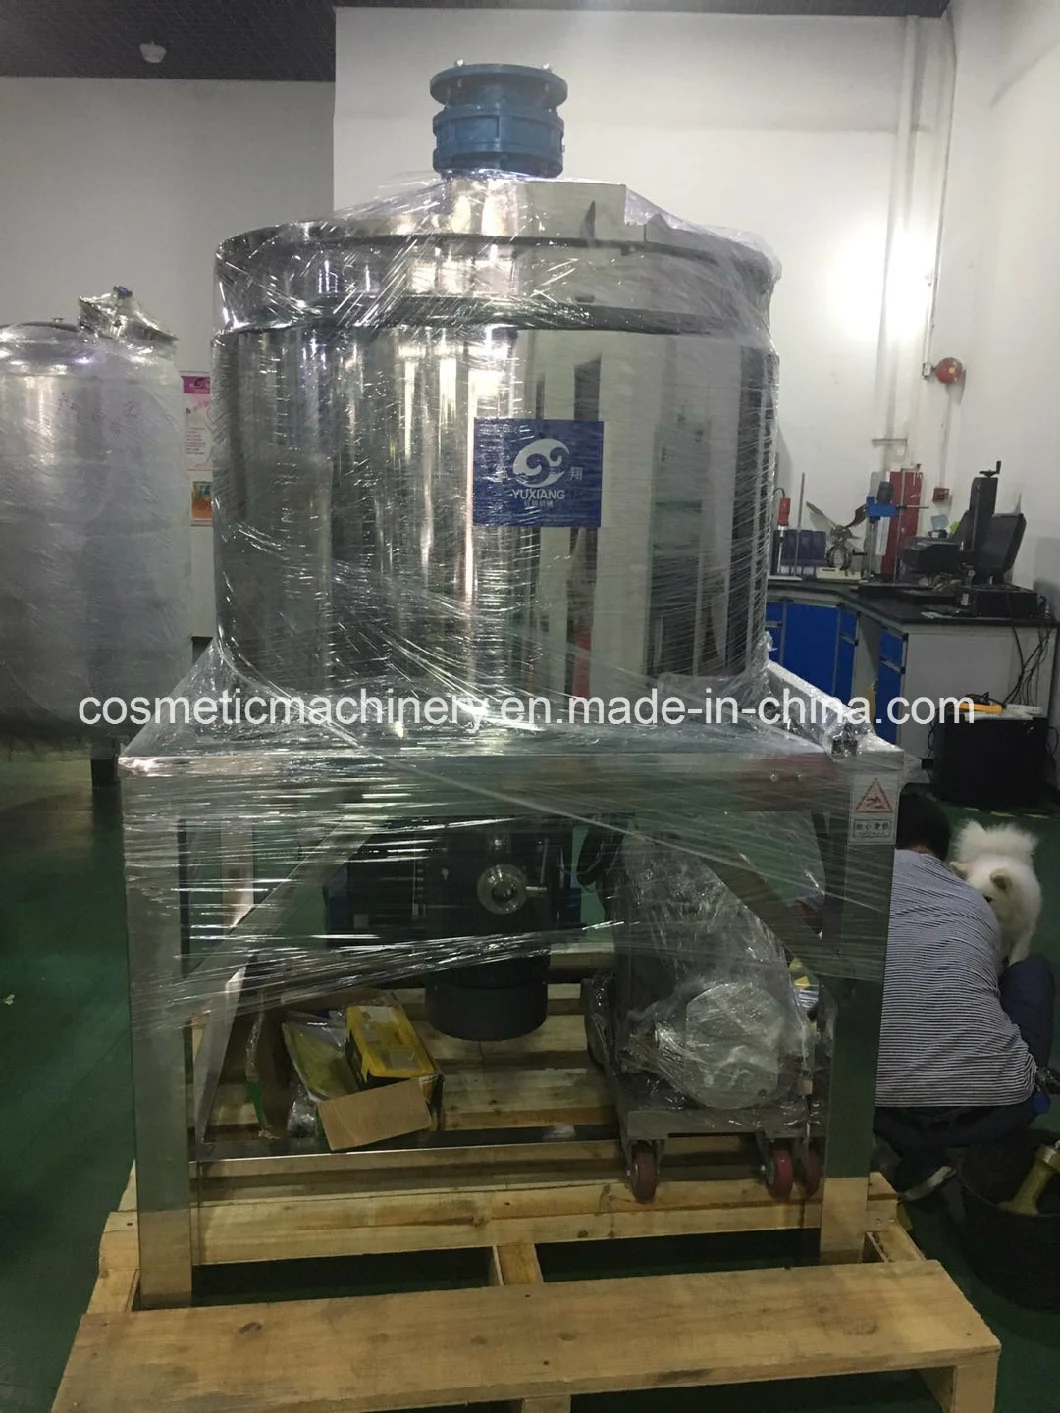 200-5000L Liquid Wash Mixer, Liquid Soap Mixing Tank, Detergent Production Line